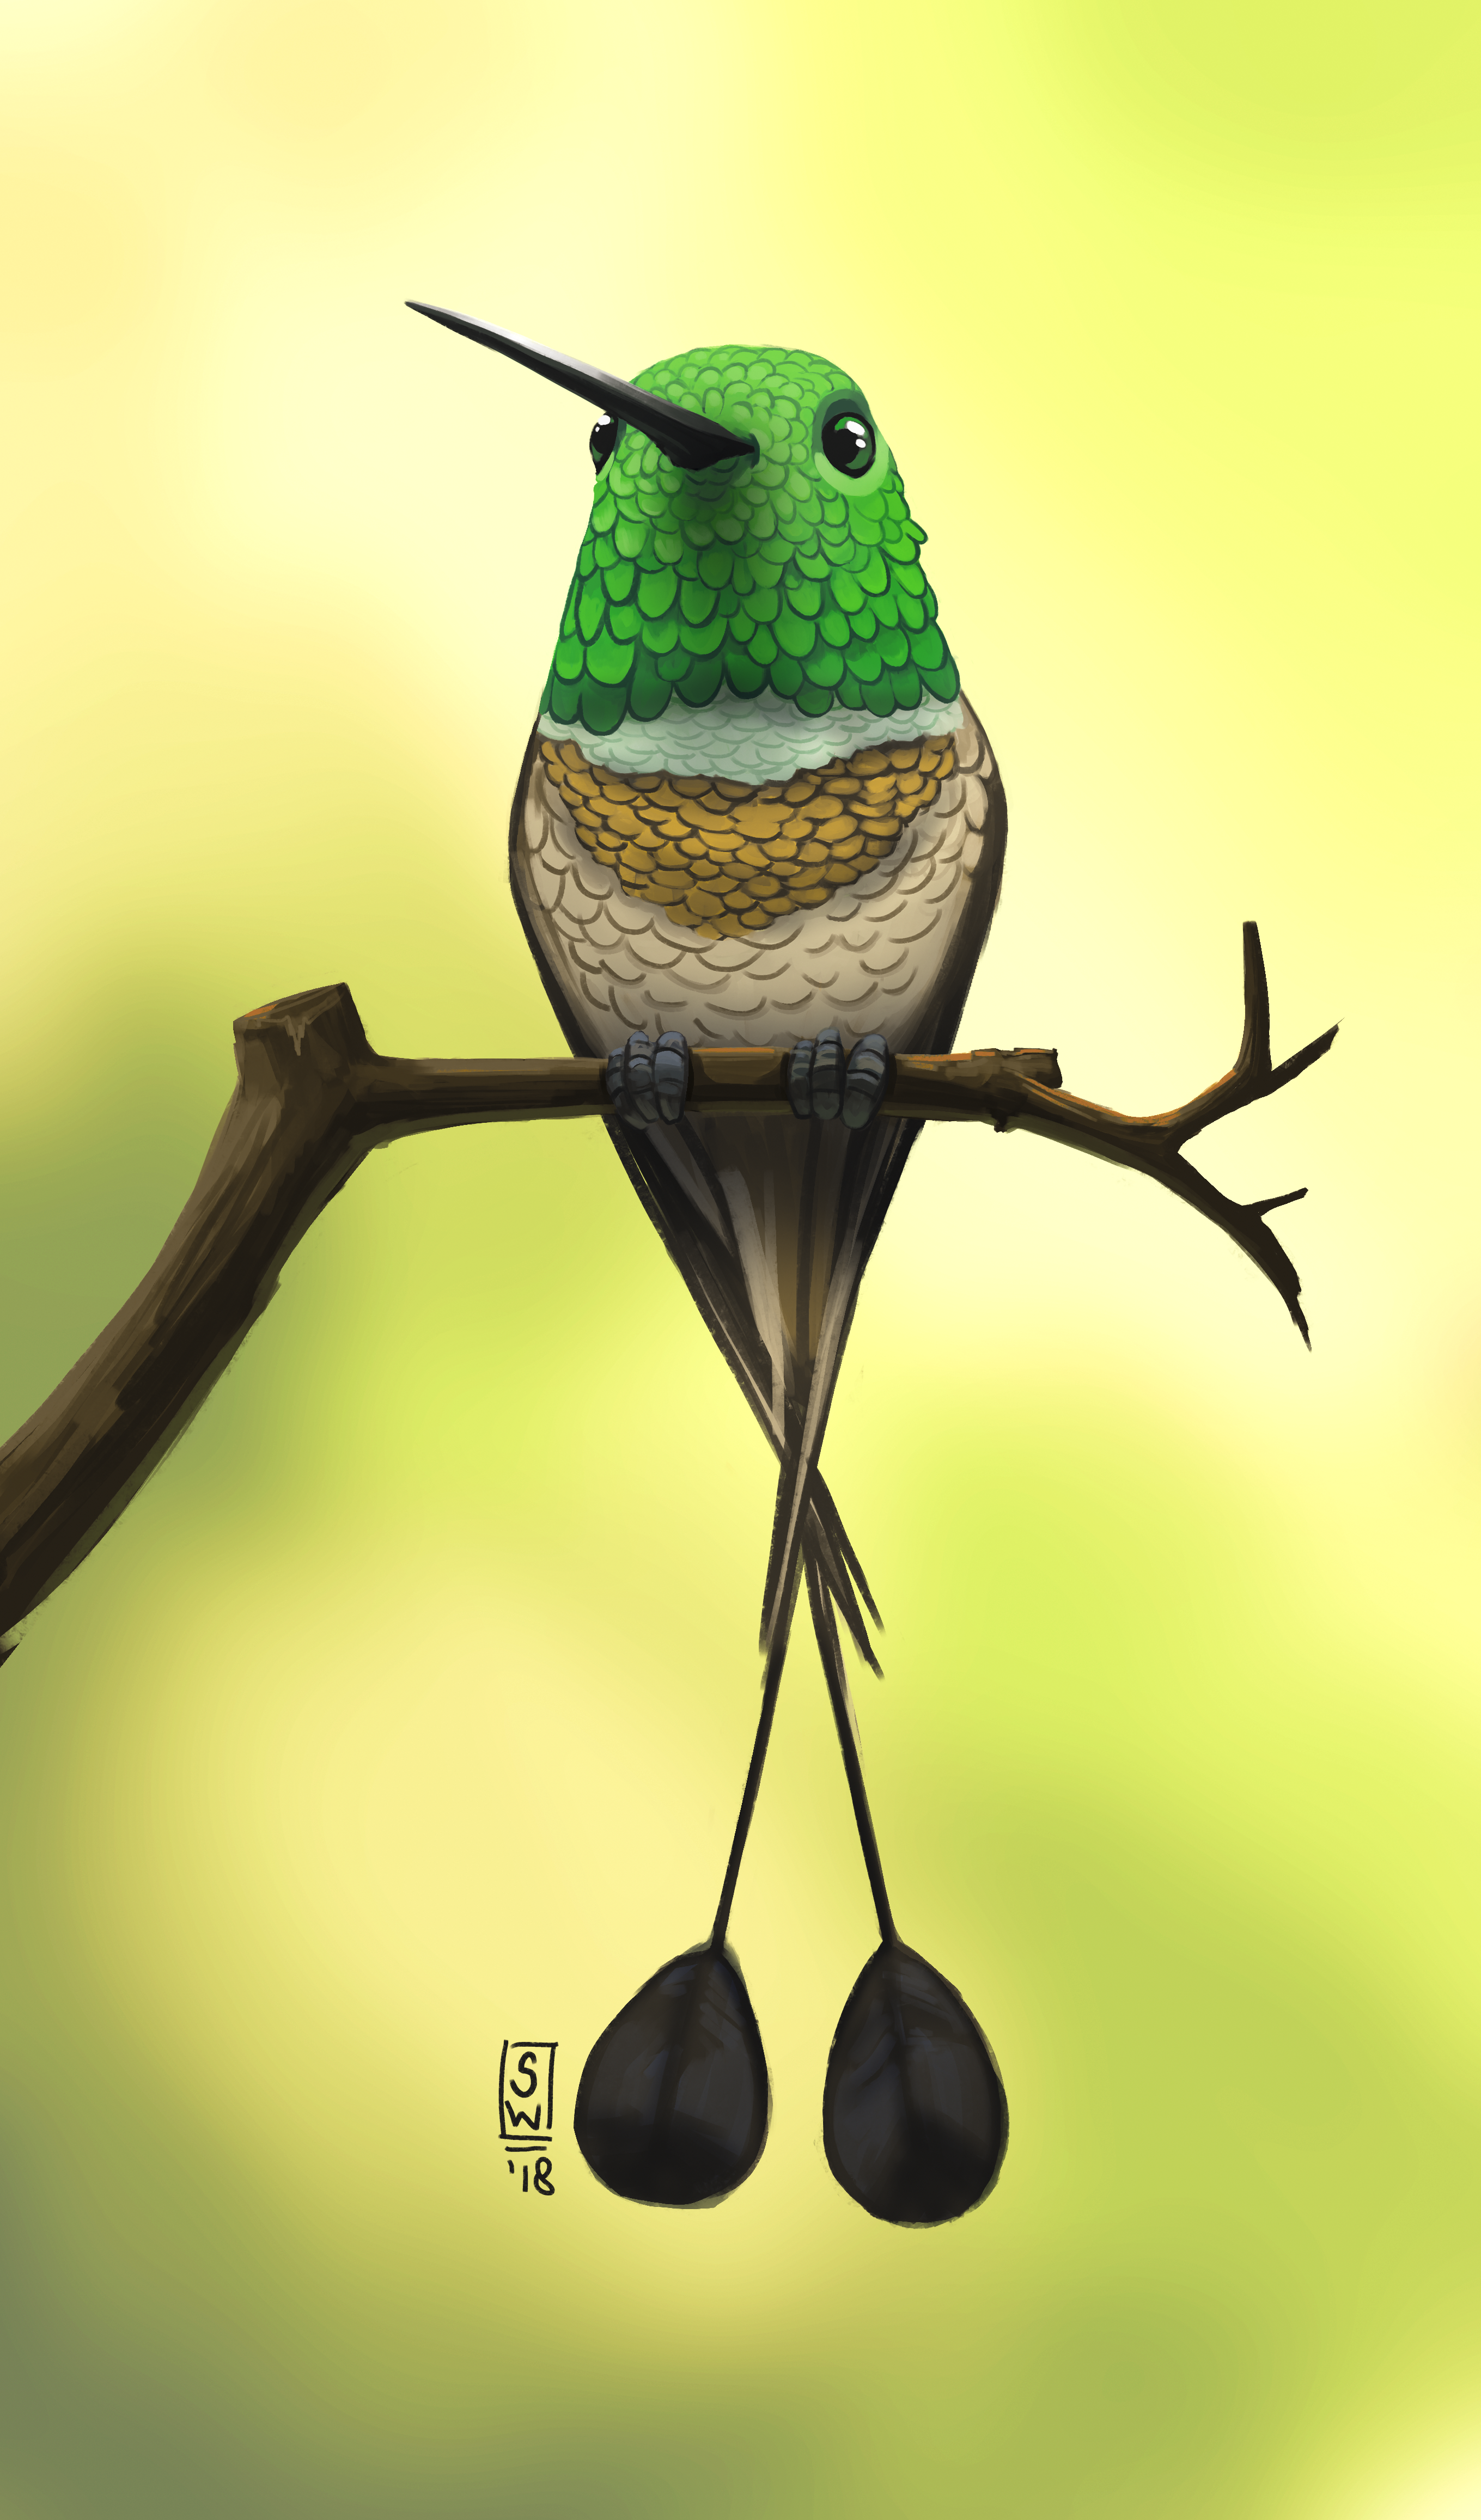 Racket-tailed Bird